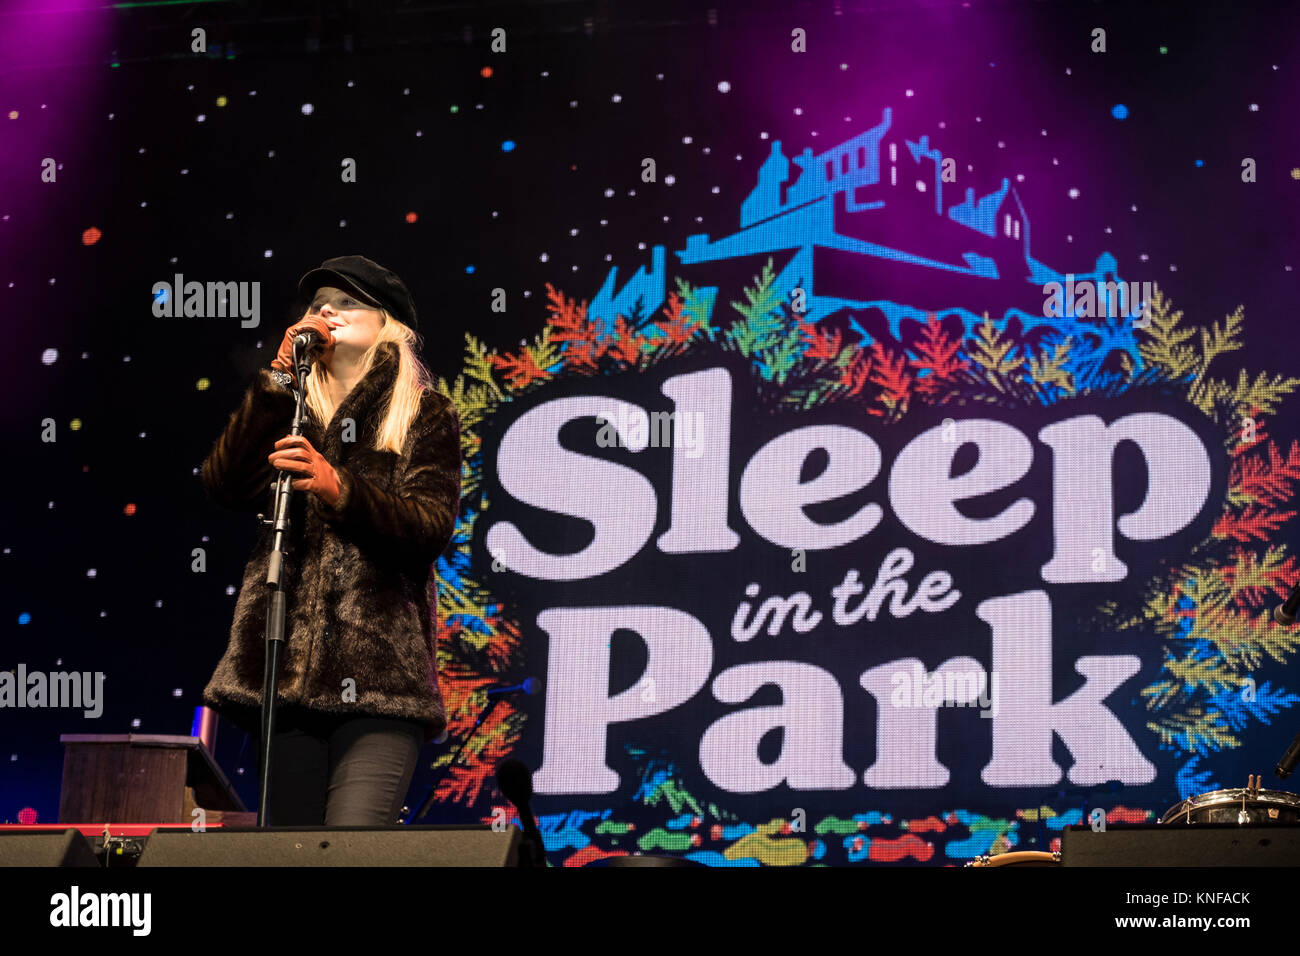 Sharon Martin effectue à dormir dans le parc, qui s'est tenue à des jardins de Princes Street d'Édimbourg, a vu près de 9000 personnes dorment à l'extérieur pour obtenir de l'argent et l'aw Banque D'Images